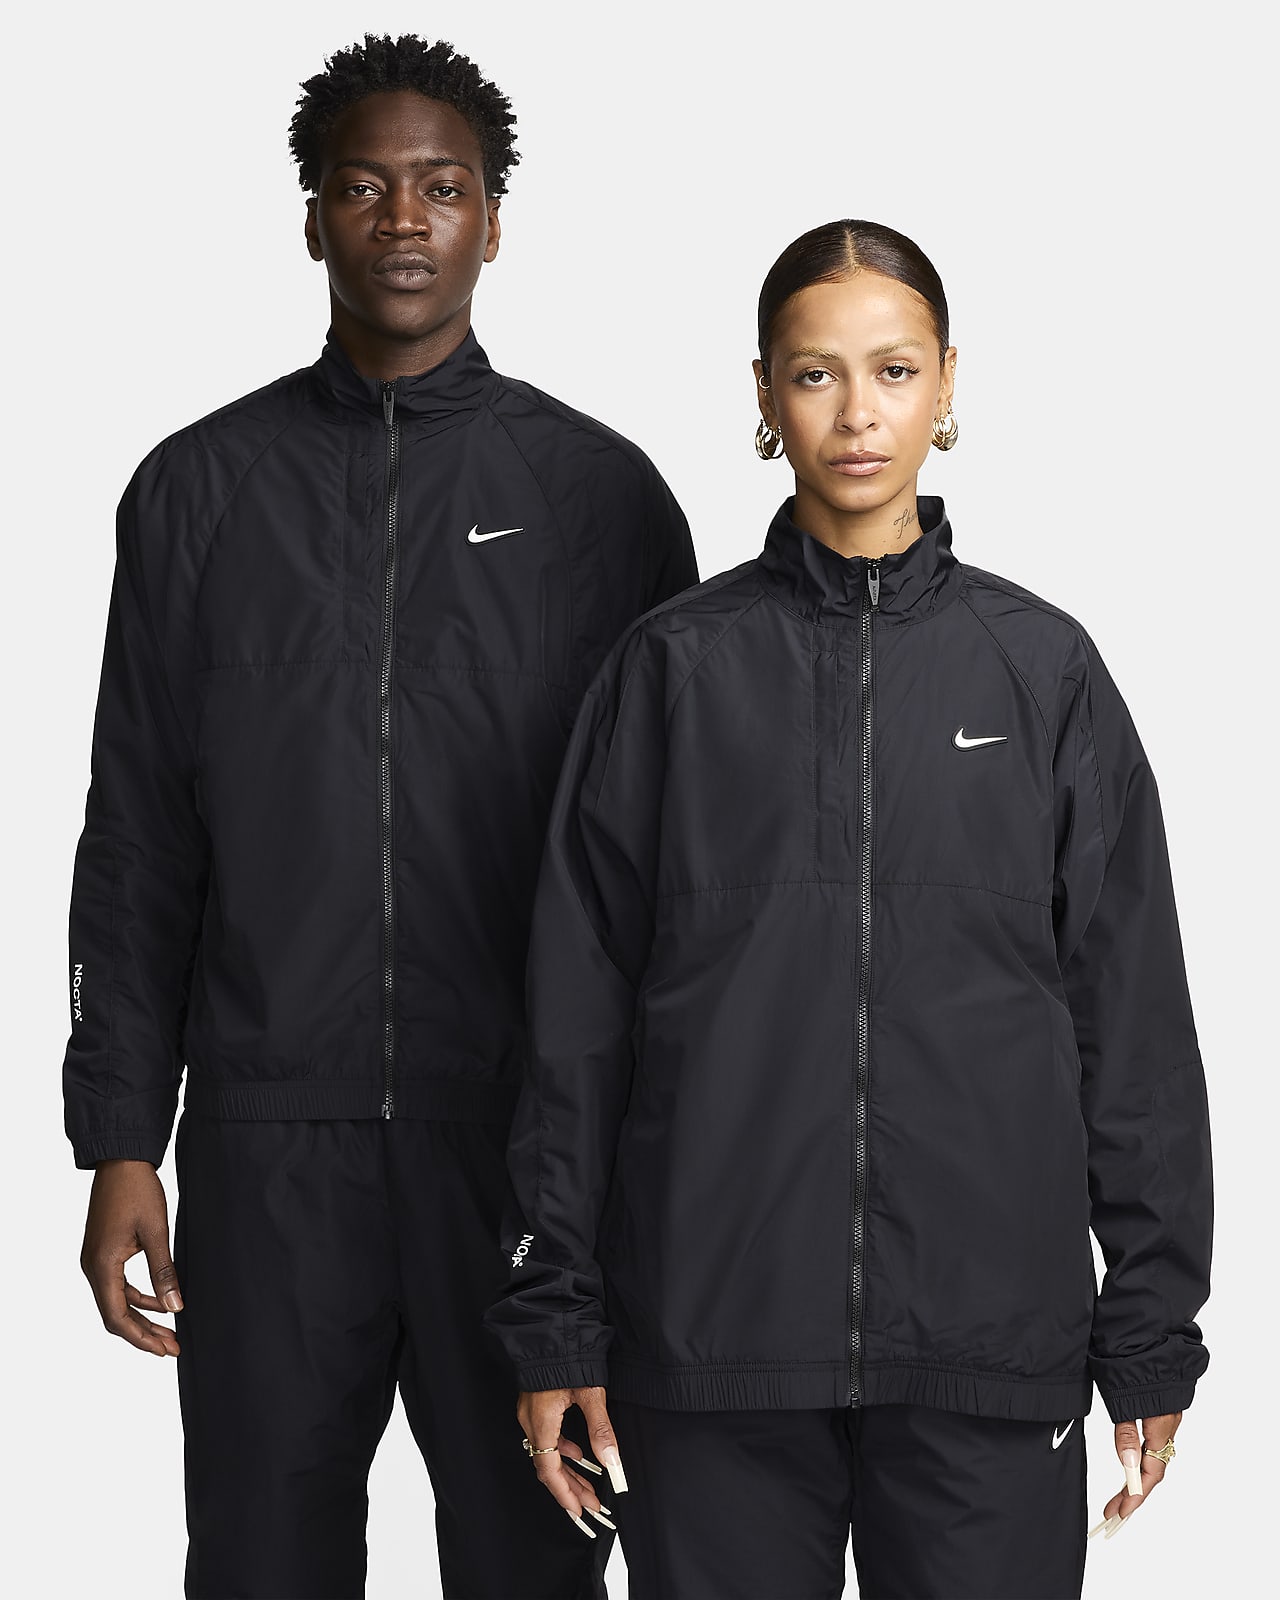 NOCTA x Nike Track Jacket Black XL